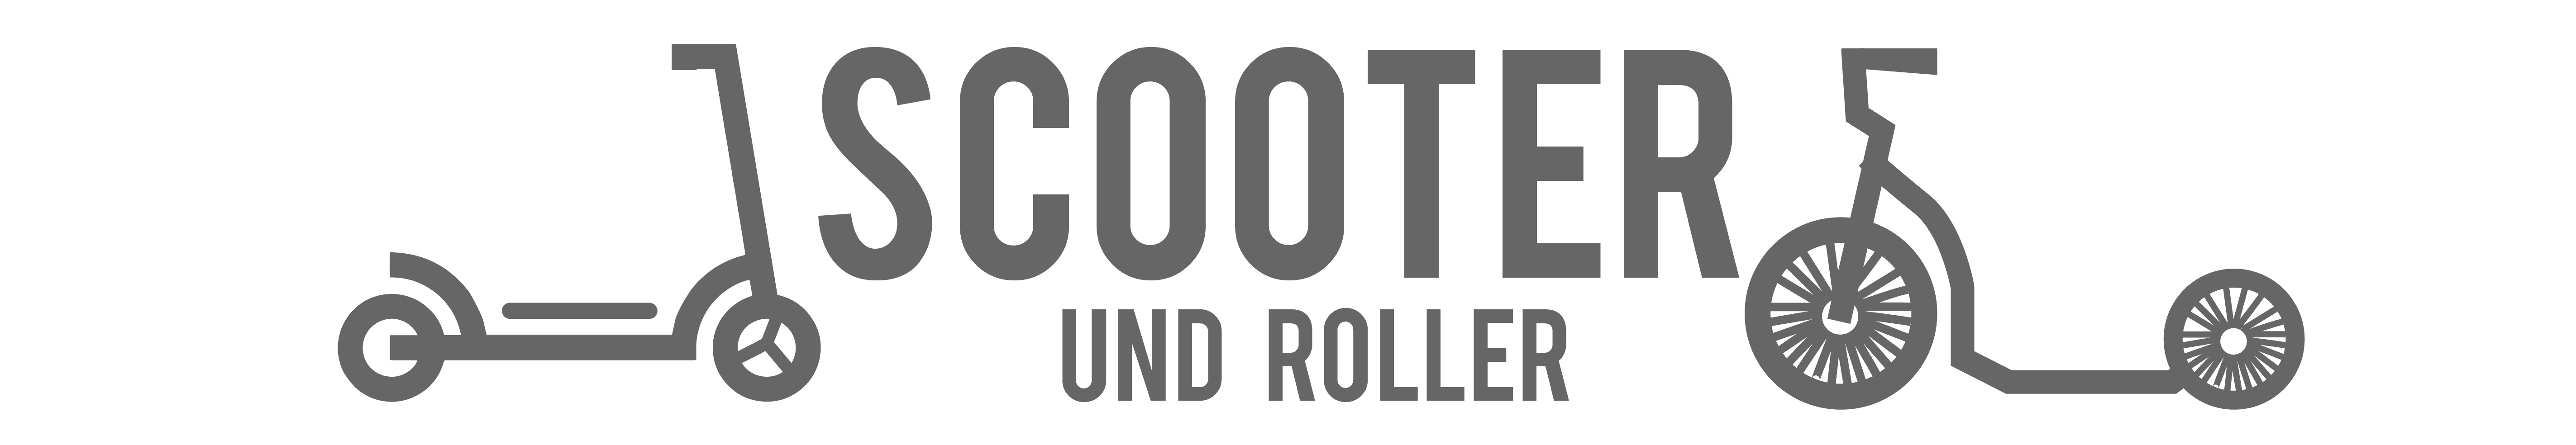 Scooter und Roller